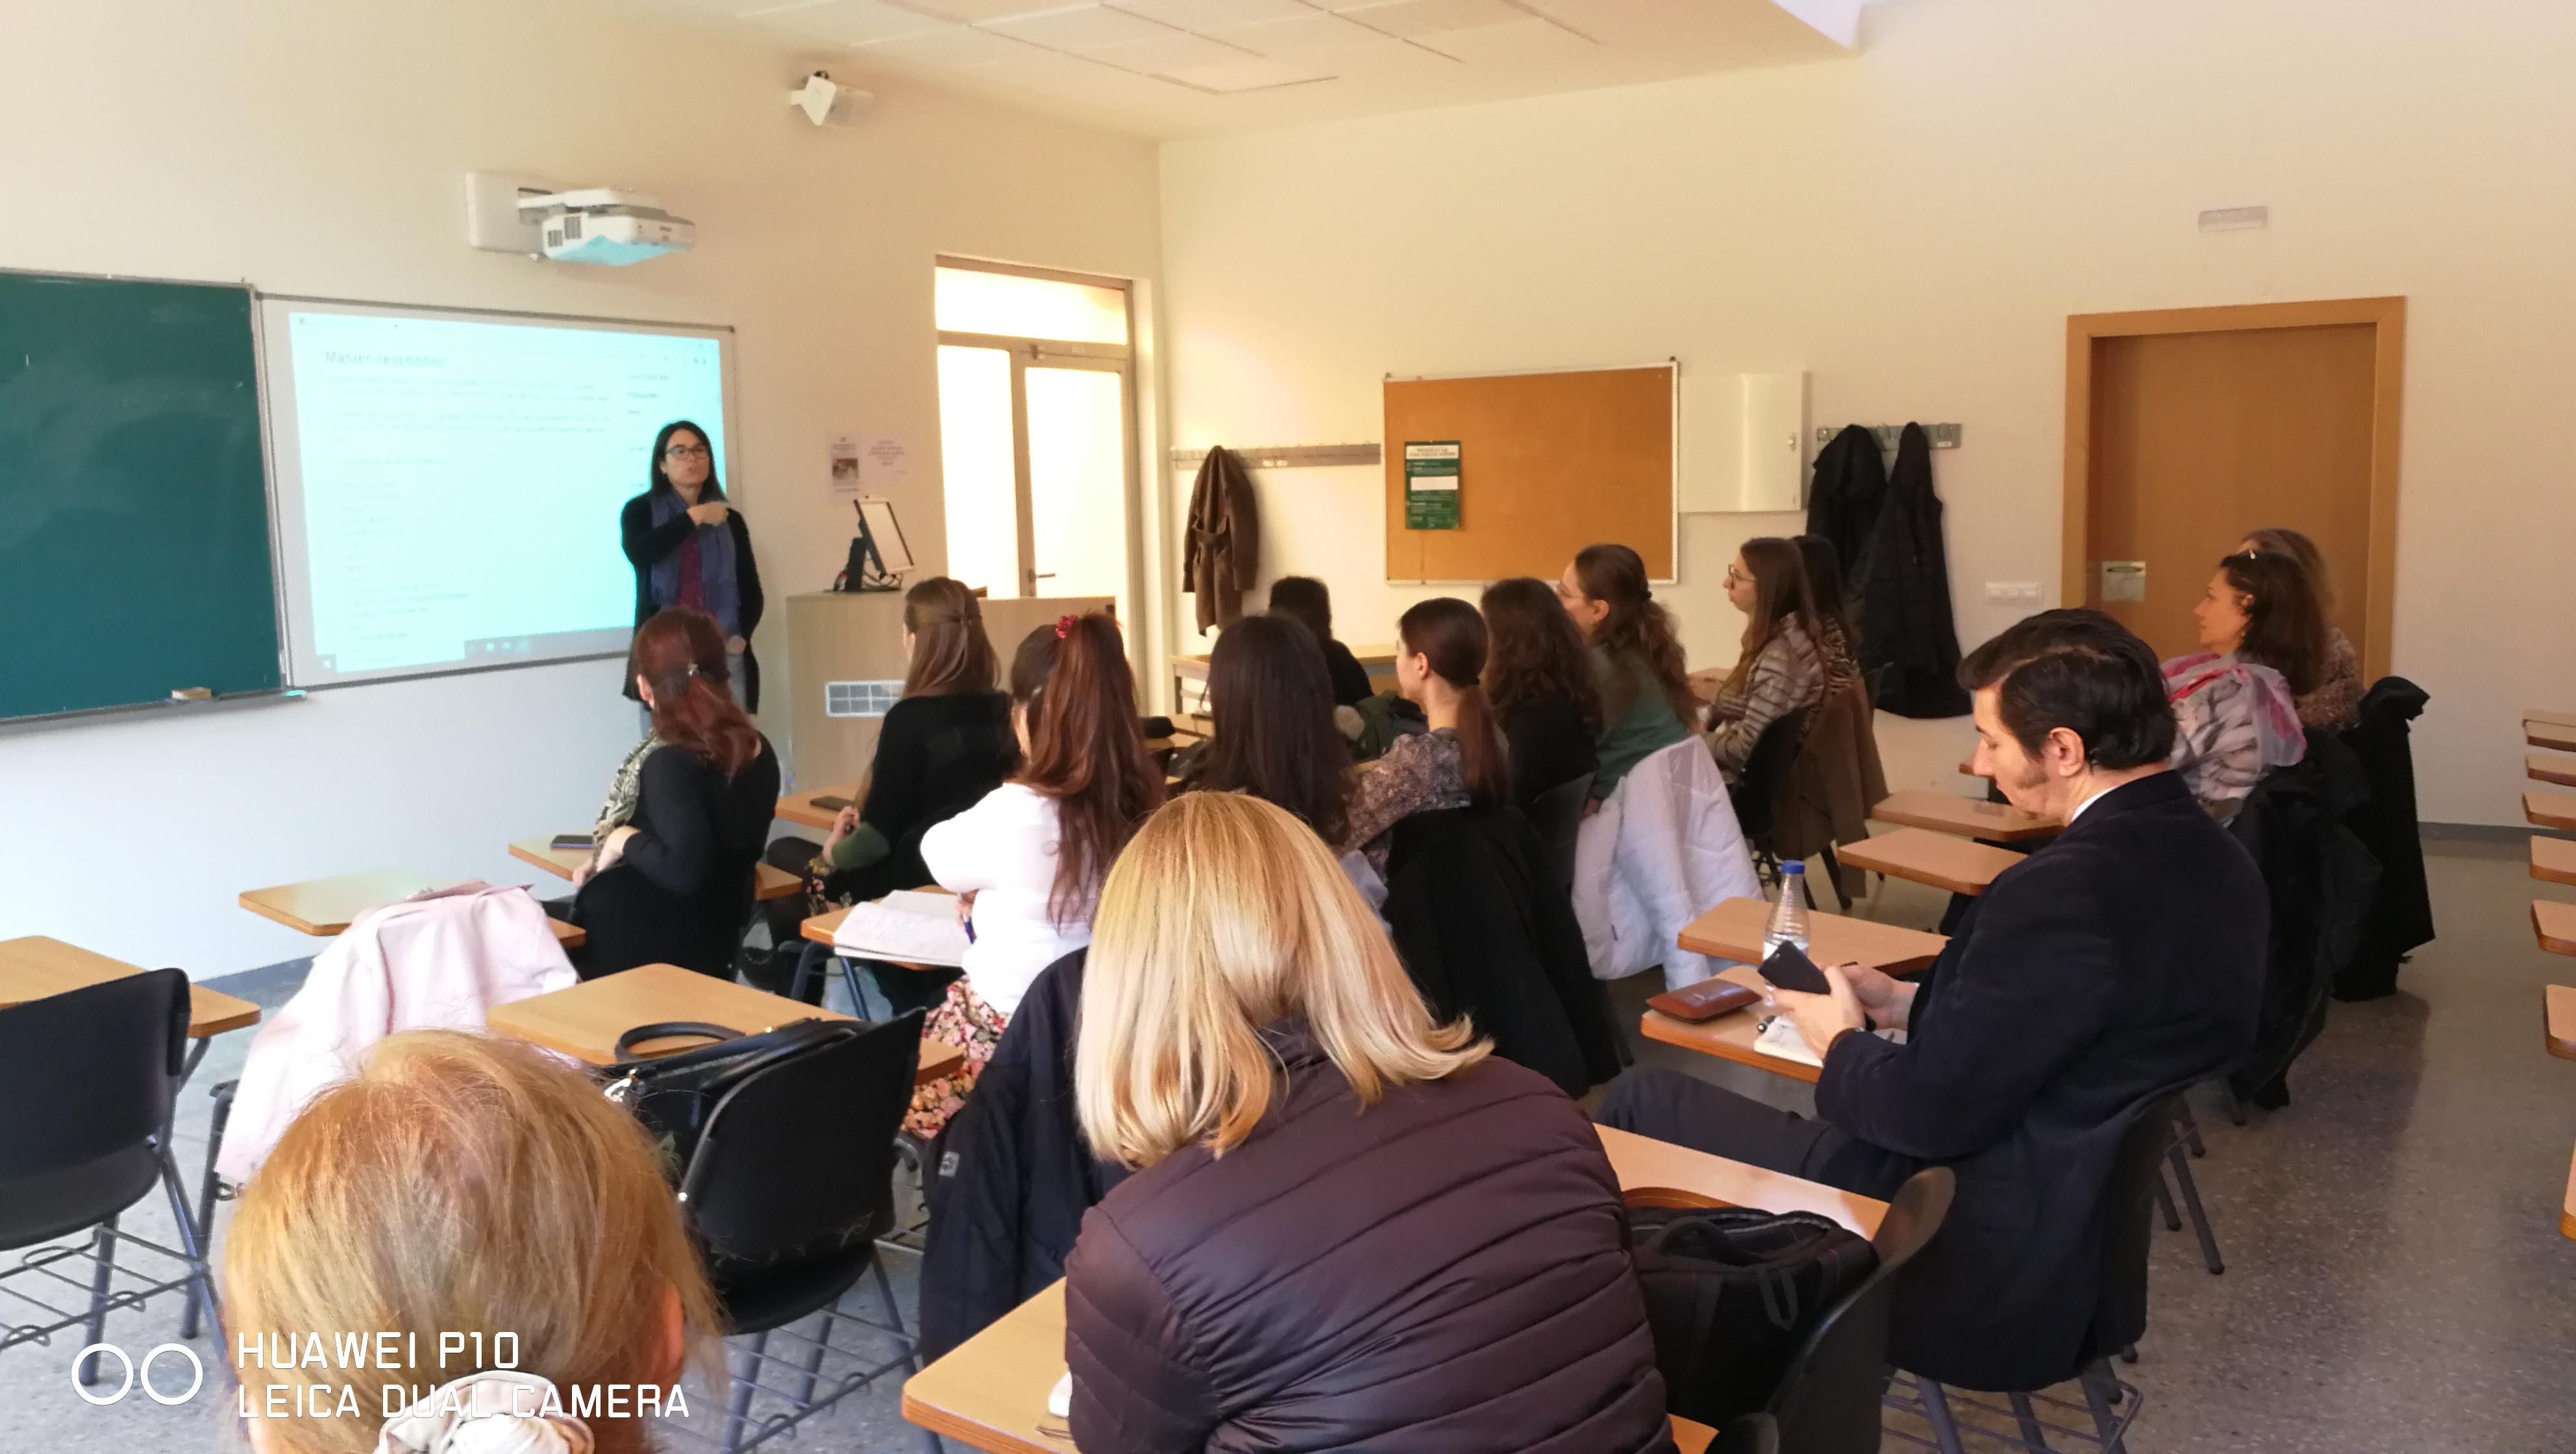 Presentació visual als visitants de Bucarest a un aula de la Facultat